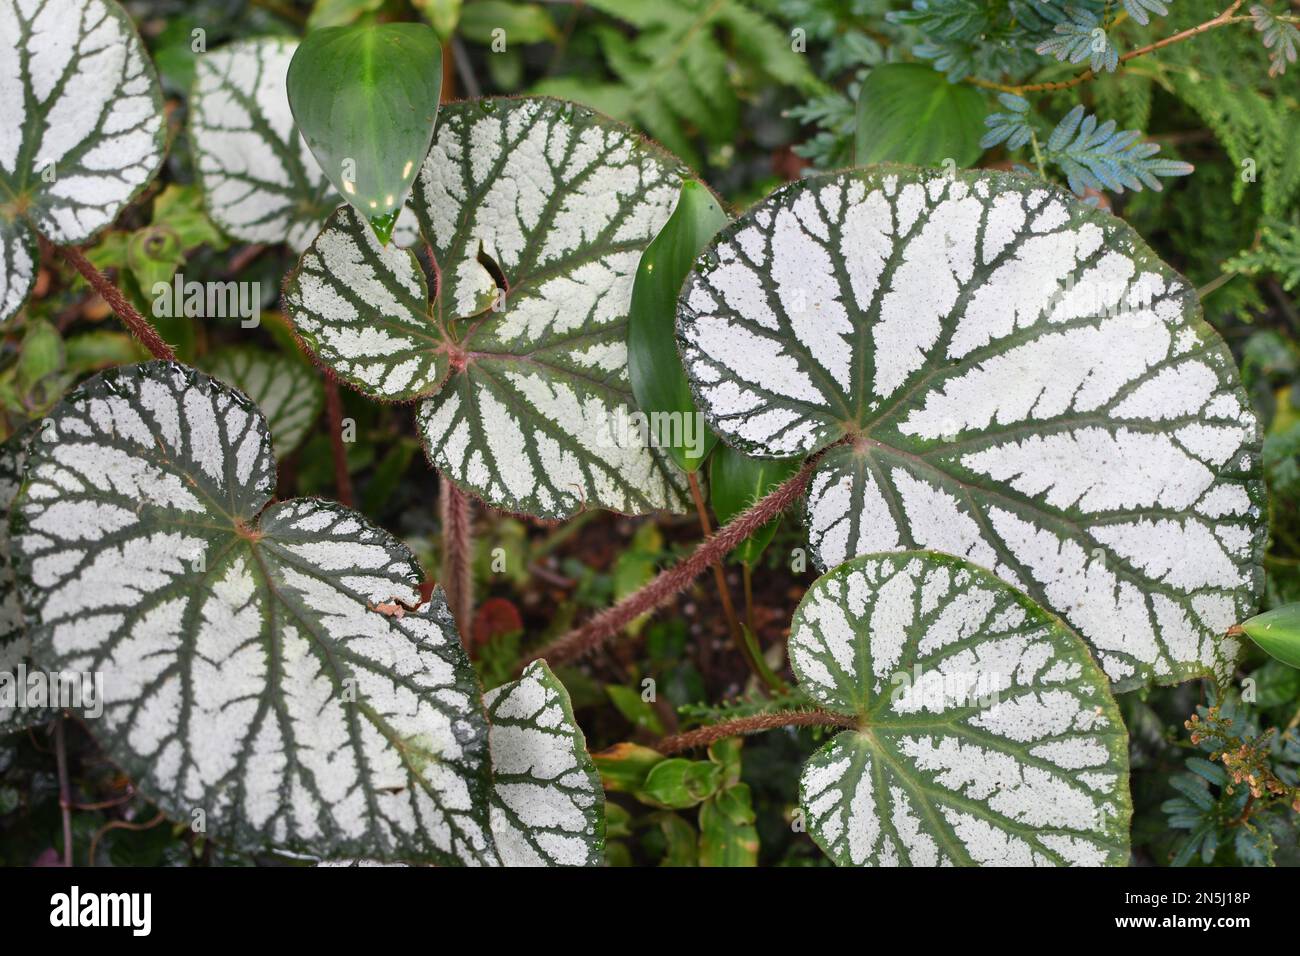 Nahaufnahme der Struktur von Begonia-Blättern mit einem extrem schönen rex mit großen Silber- und Grünblättern, die kräftige Farben haben Stockfoto